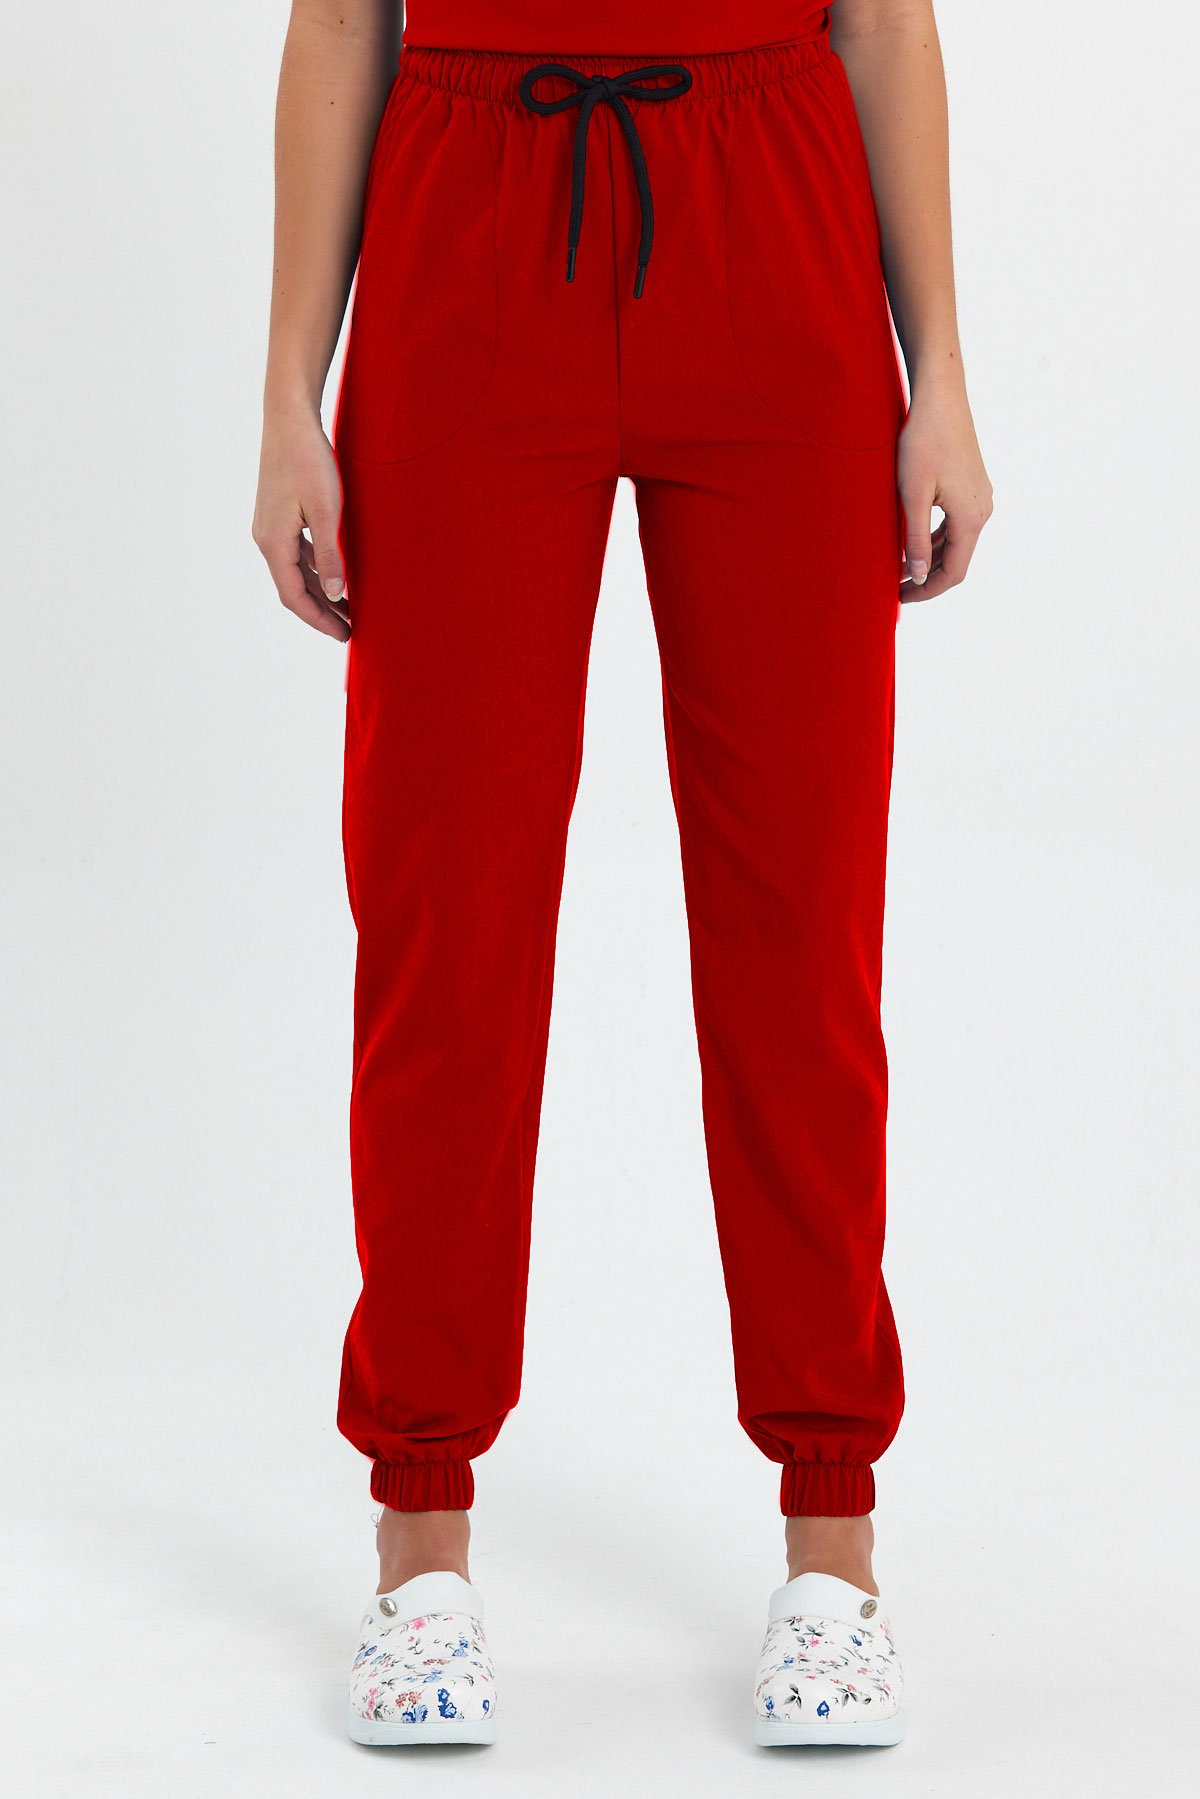 LAME 1010 Basic Likralı Kırmızı Scrubs, Hemşire Forması Lastikli Paça Pantolon